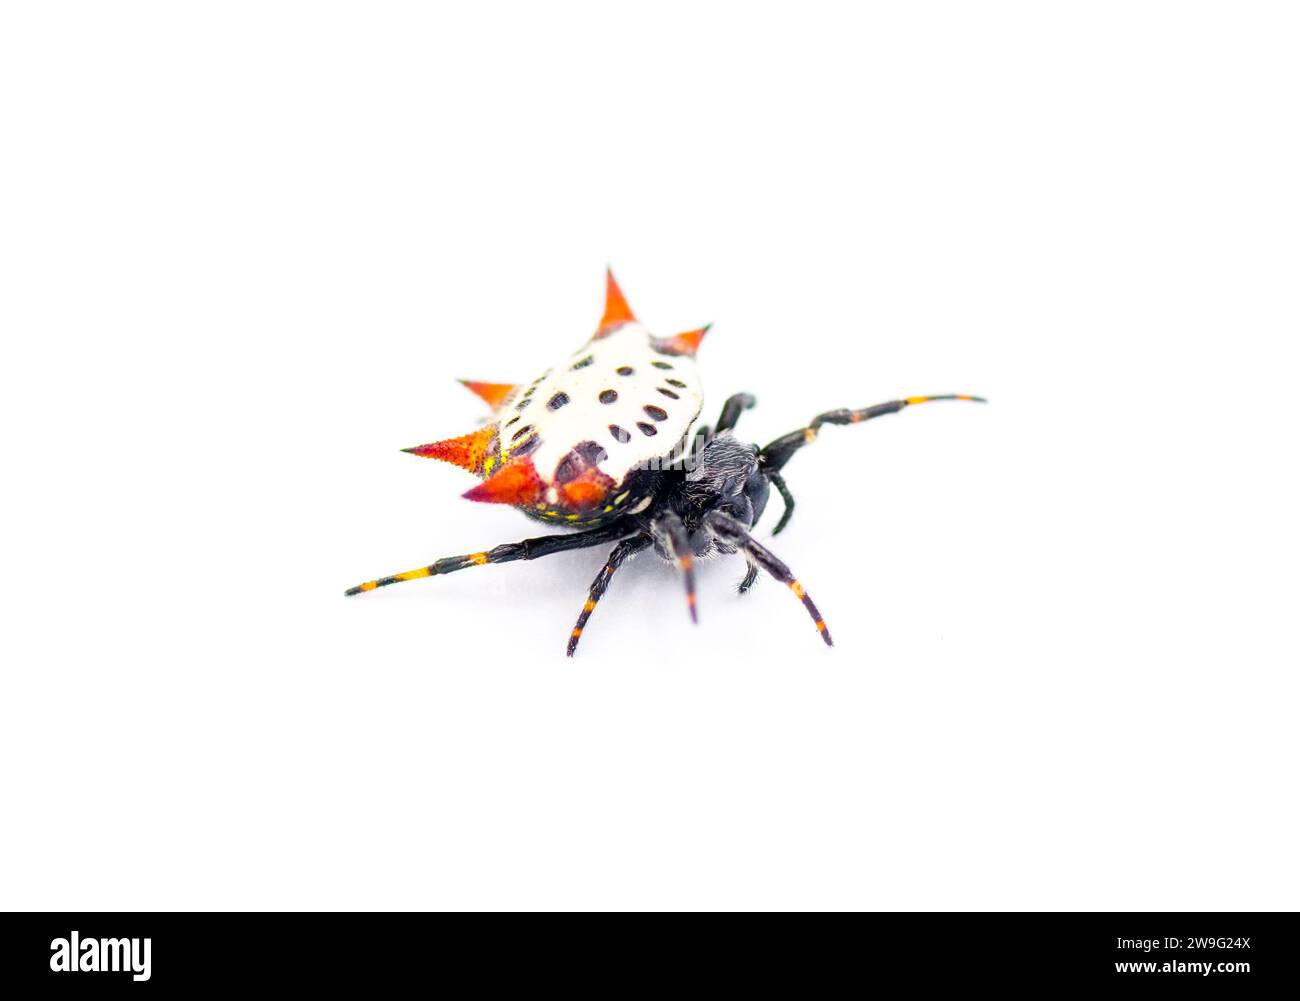 Spiny back Orb Weaver Spinnen - Gasteracantha cancriformis - alias Krabben- oder Drachenspinne kriechen rechts Bein erweiterte Ansicht isoliert auf weißem Hintergrund Stockfoto